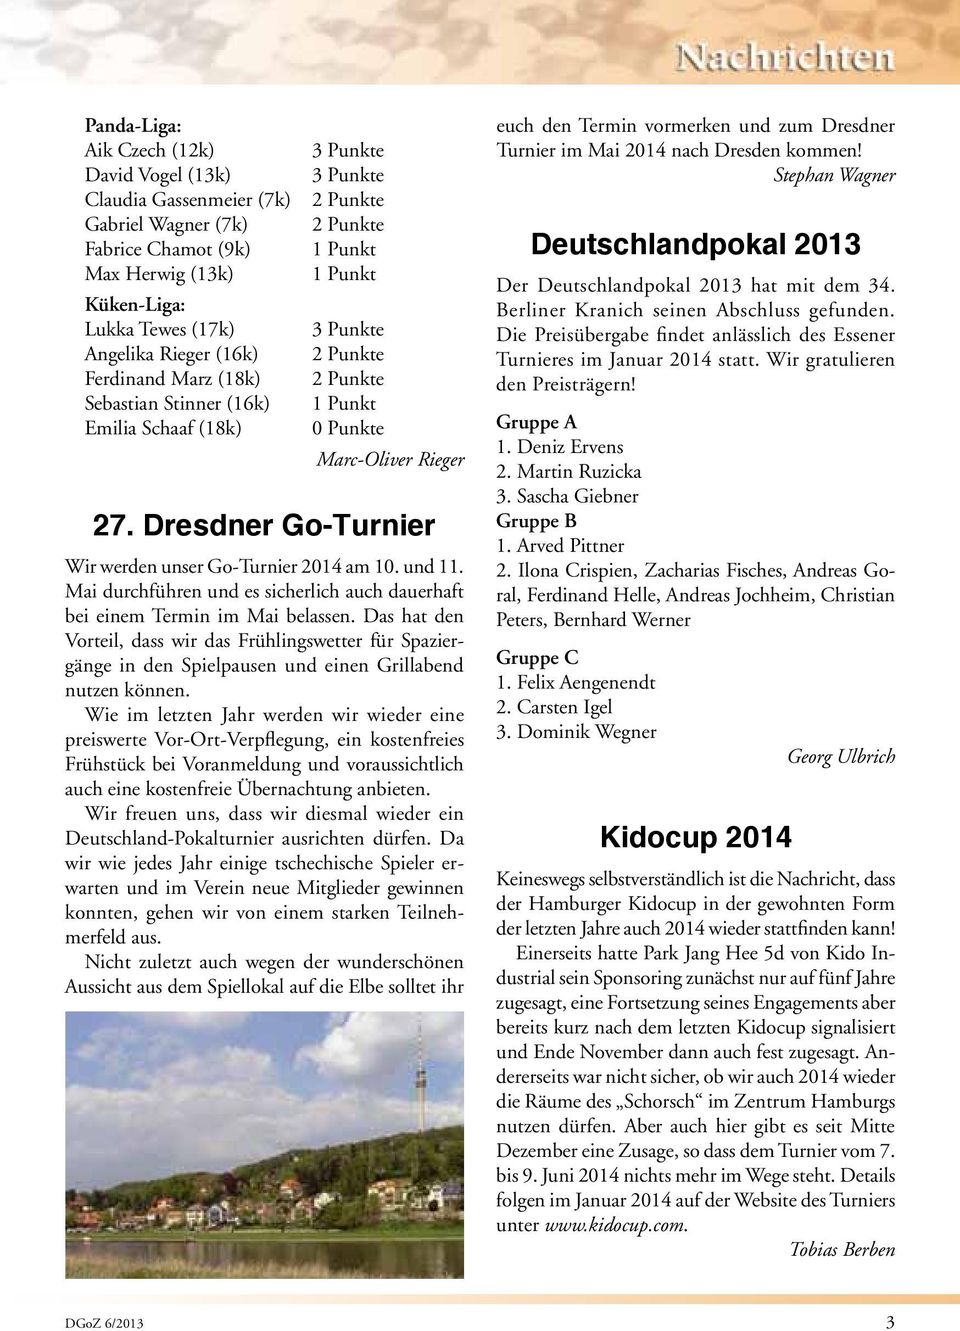 Dresdner Go-Turnier Wir werden unser Go-Turnier 2014 am 10. und 11. Mai durchführen und es sicherlich auch dauerhaft bei einem Termin im Mai belassen.